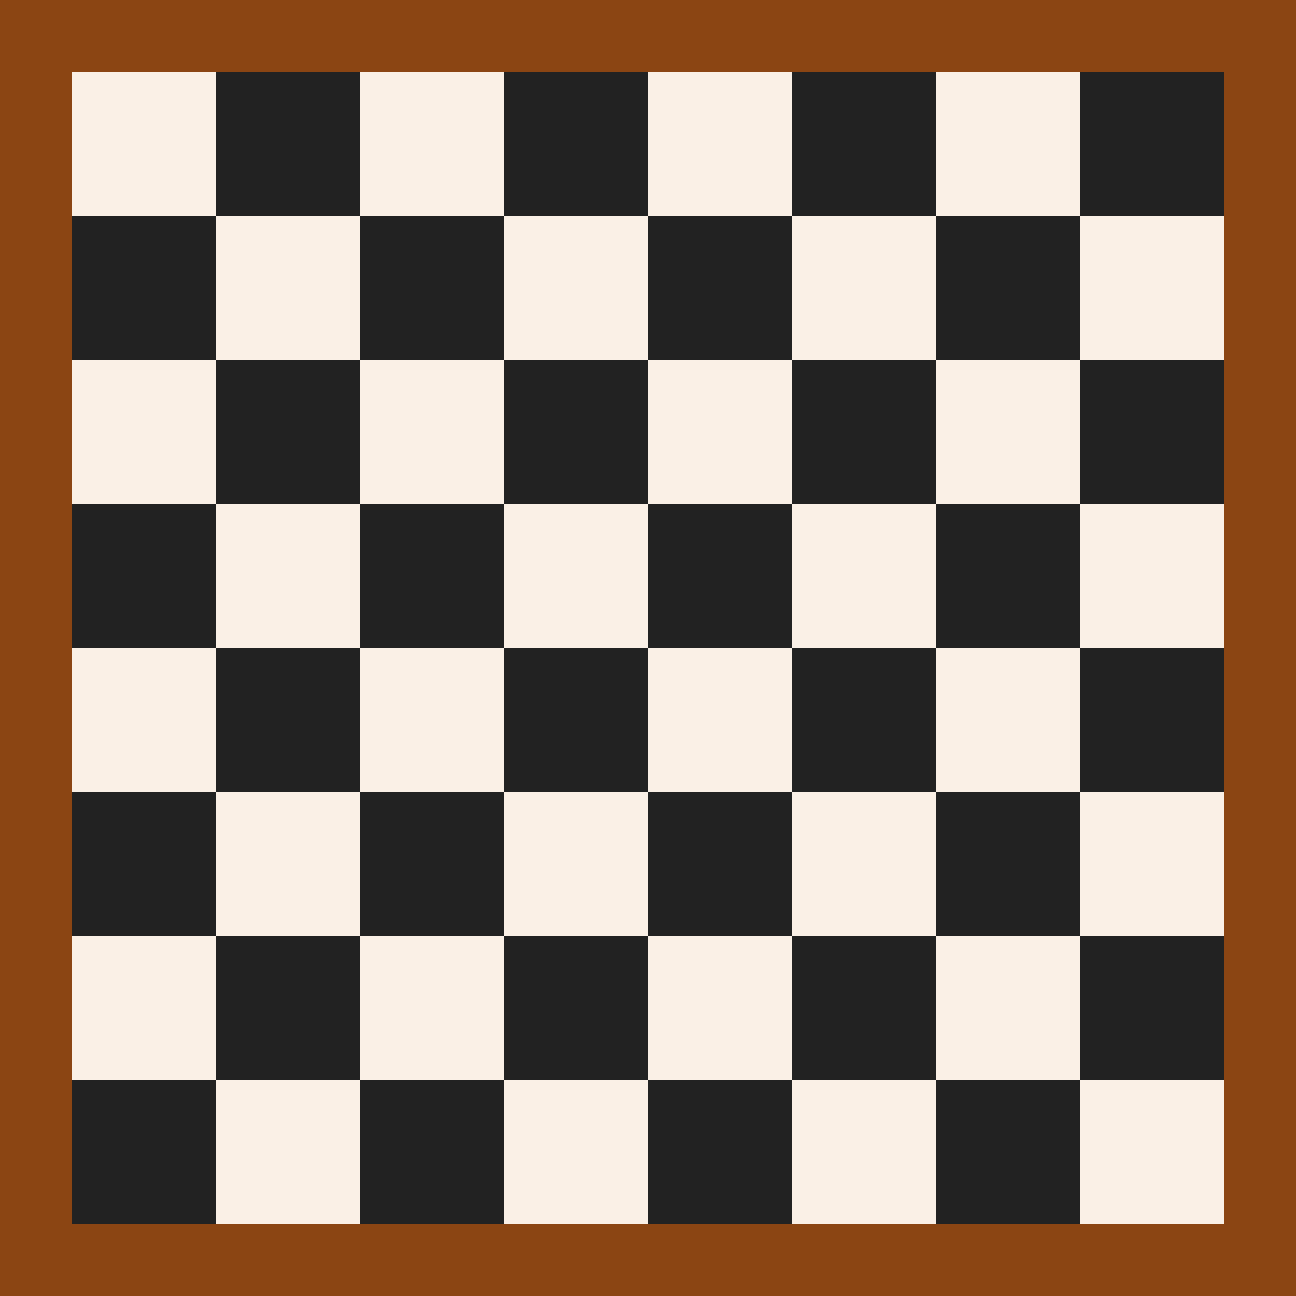 Шахматная доска 5 на 5. Шахматное поле для печати. Шахматная доска текстура. Шахматная плитка текстура. Поле для шашек.